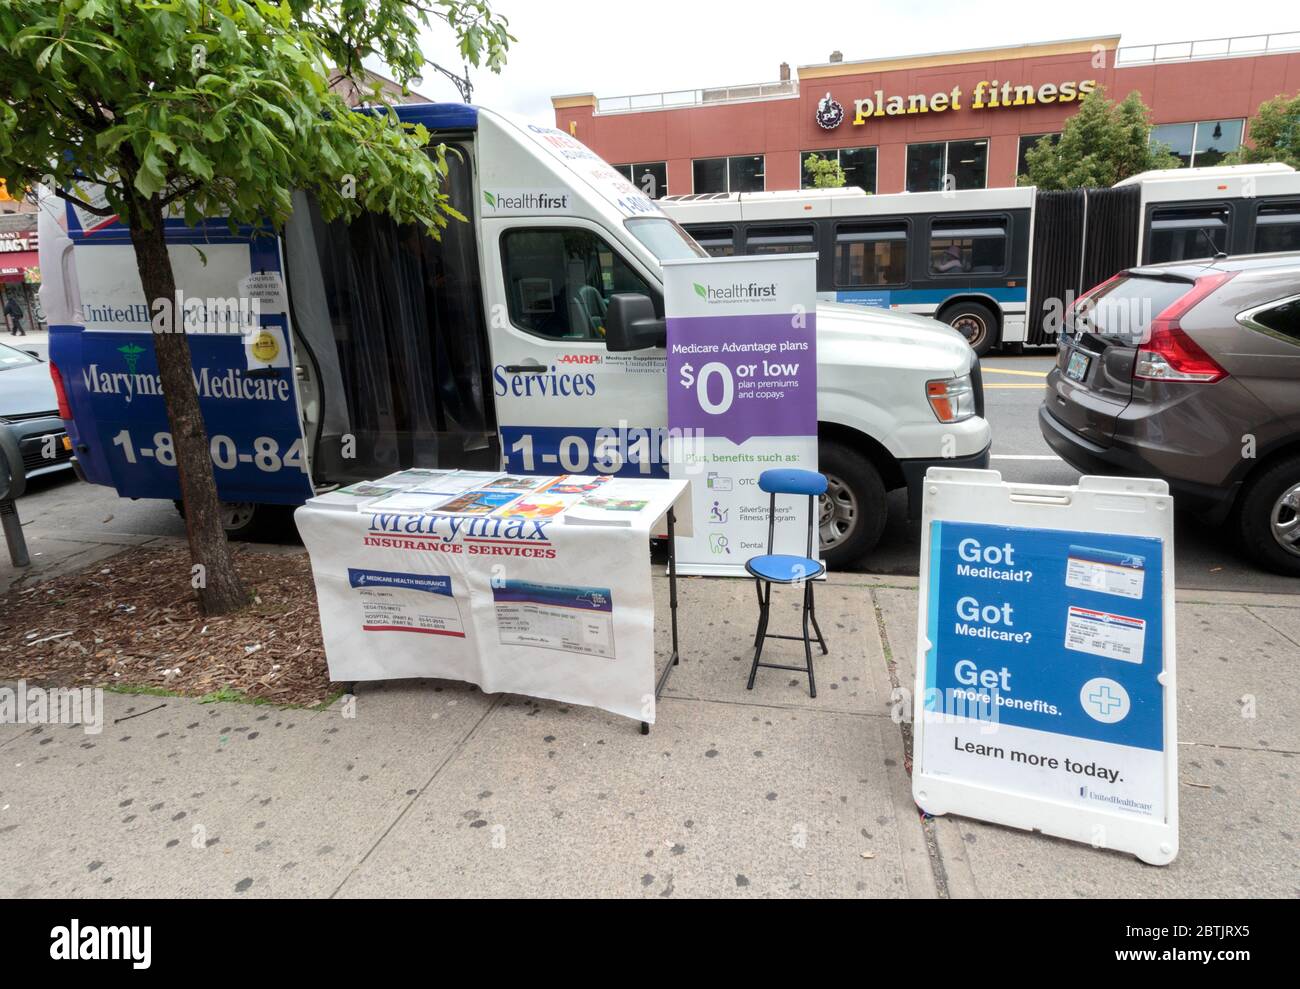 Ein geparkter Van und ein Tisch und Schilder auf dem Bürgersteig laden Passanten ein, sich für eine kostengünstige oder keine Kosten-Krankenversicherung anzumelden, ein gemeinsames Bild in Bereichen mit niedrigem Einkommen Stockfoto